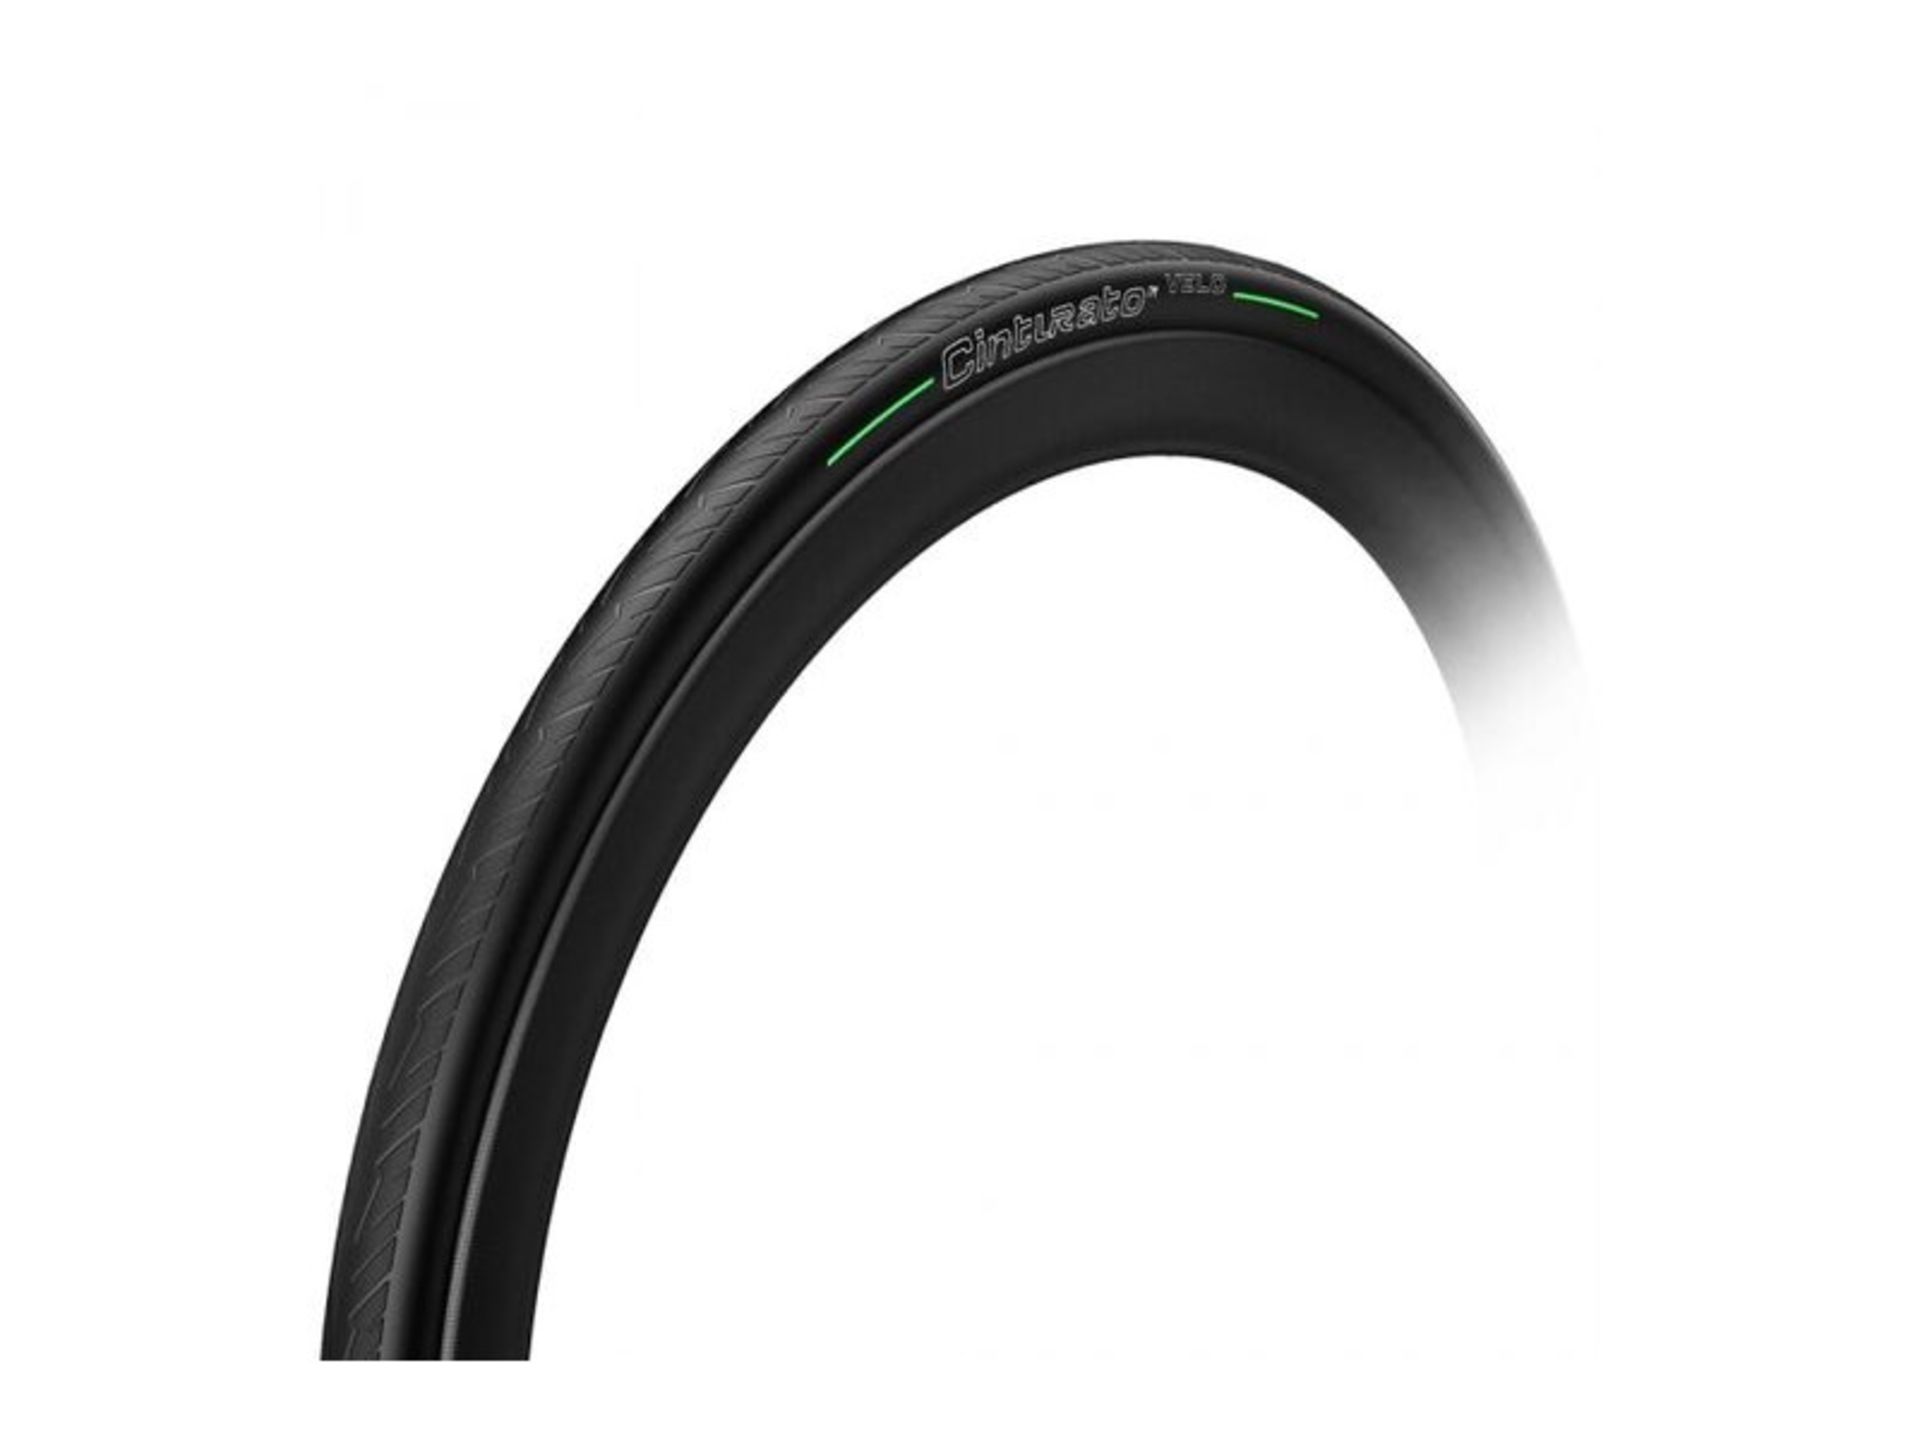 Pirelli Cinturato 700x32c 32-622 Velo TLR tire black/green